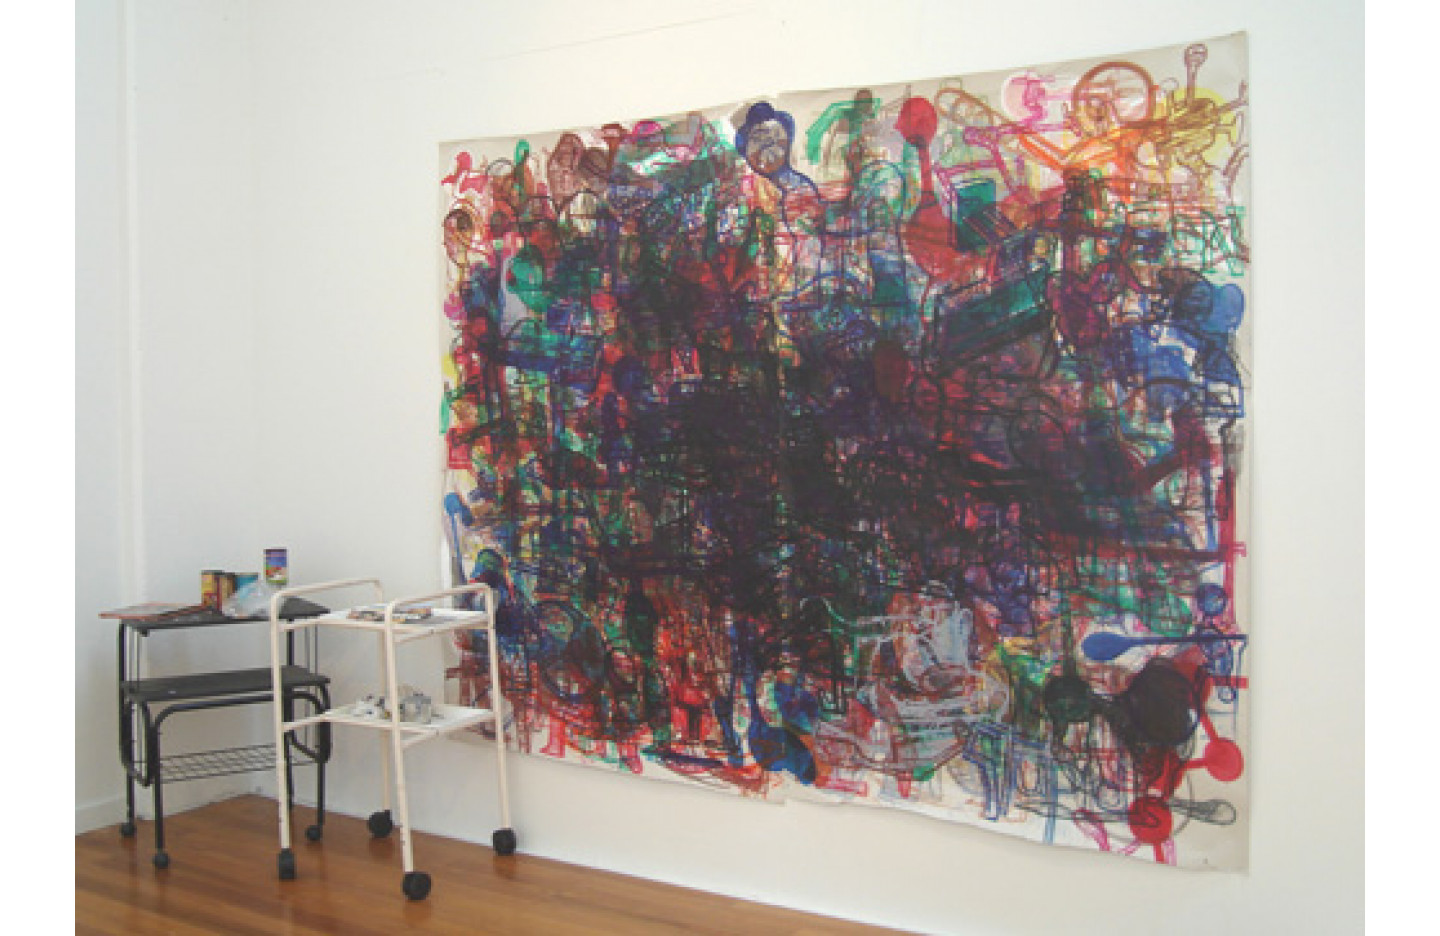 Uncle Albert, Ramp Gallery (2006)